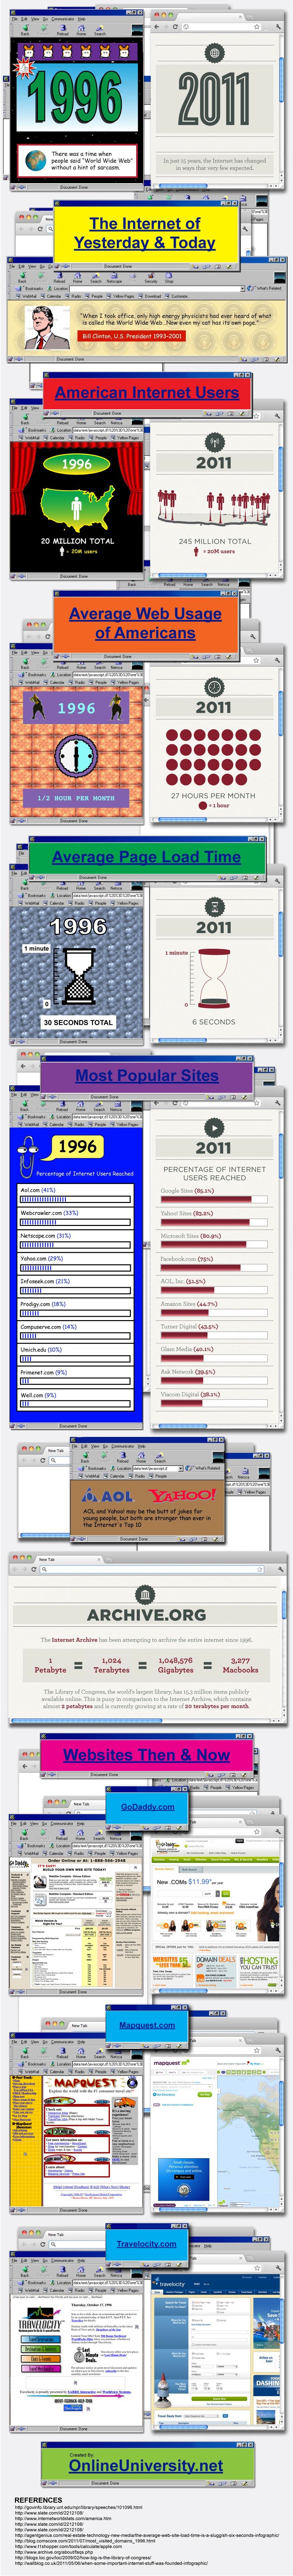 Infographie : L'internet d'hier et d'aujourd'hui - 1996 vs. 2011